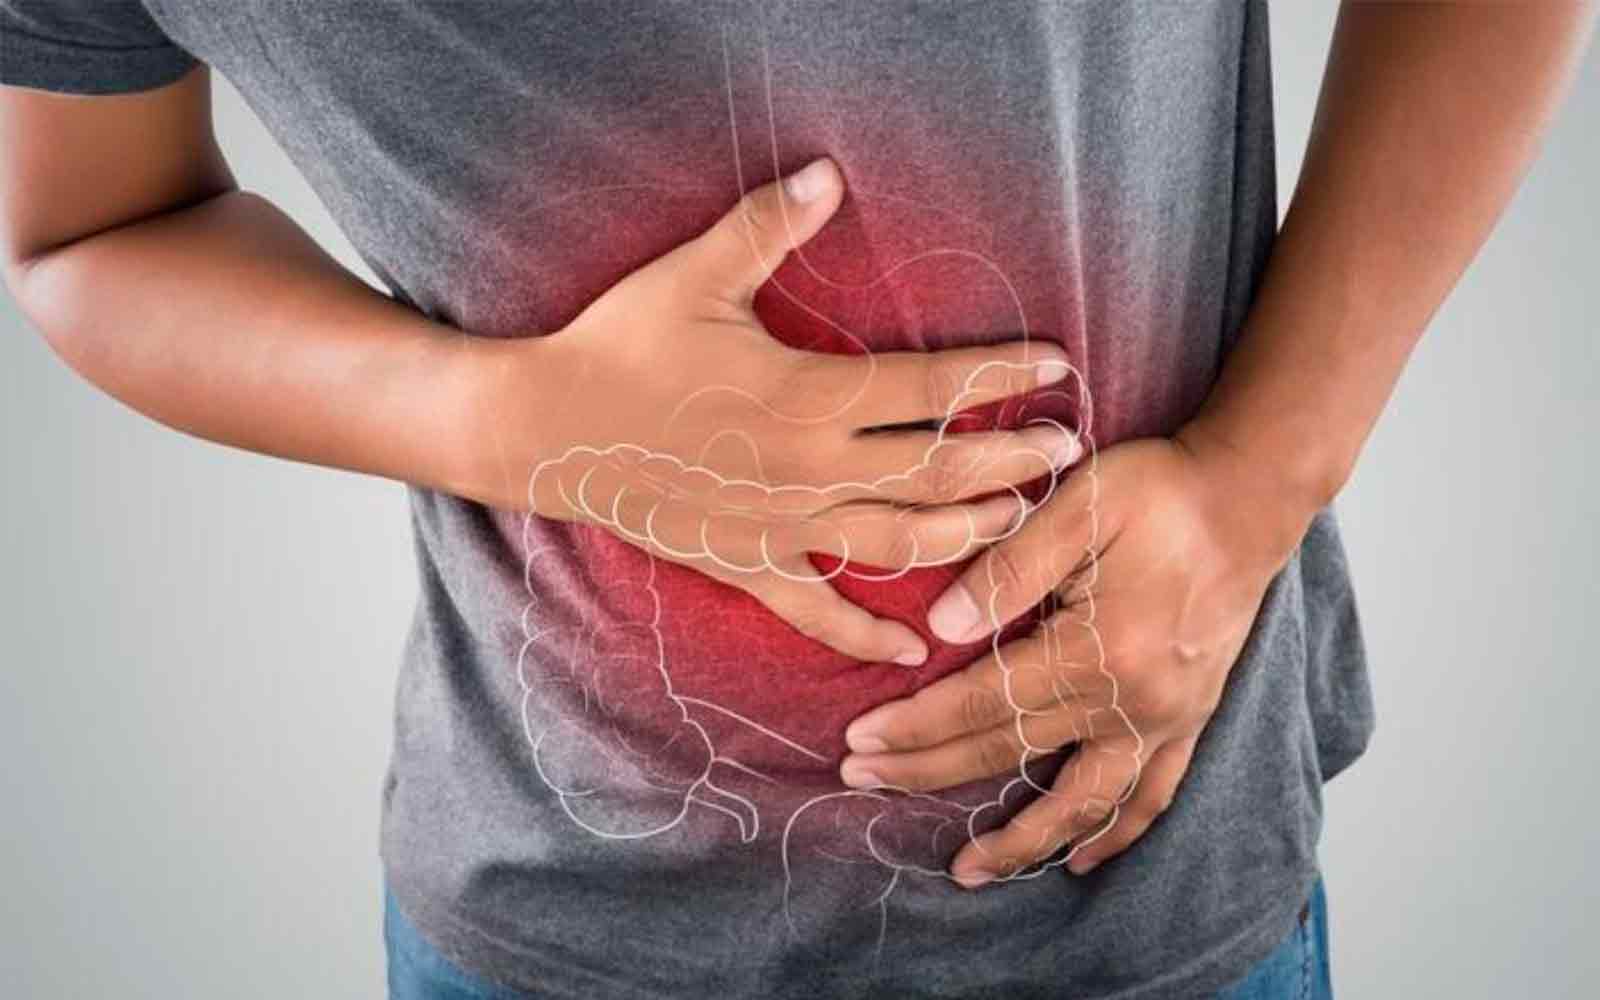 “الصحة” تحذر من هذه الأعراض.. ربما تكون مصابًا بمرض خطير في القولون